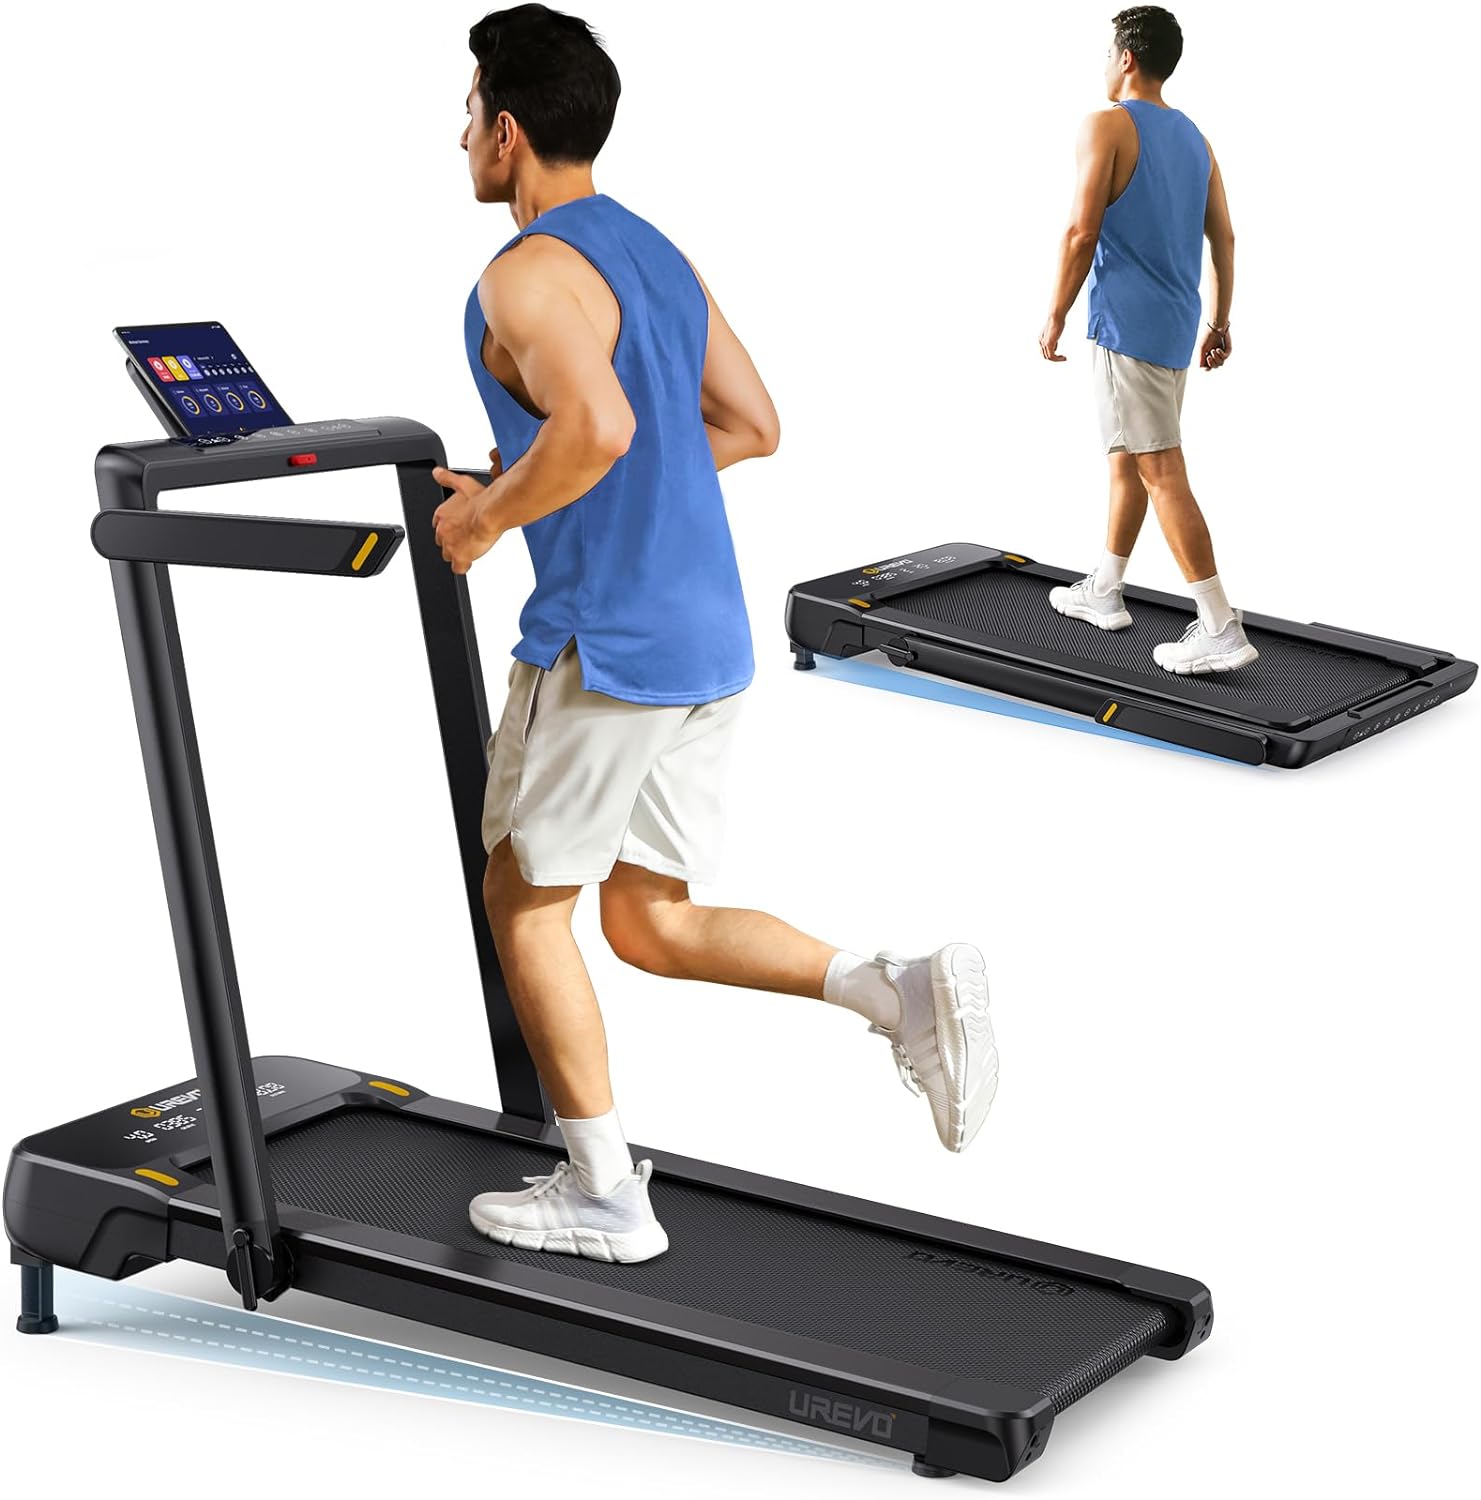 UREVO Foldable Treadmill with Auto Incline, 2.5 HP Under Desk Treadmill (no box) - $265